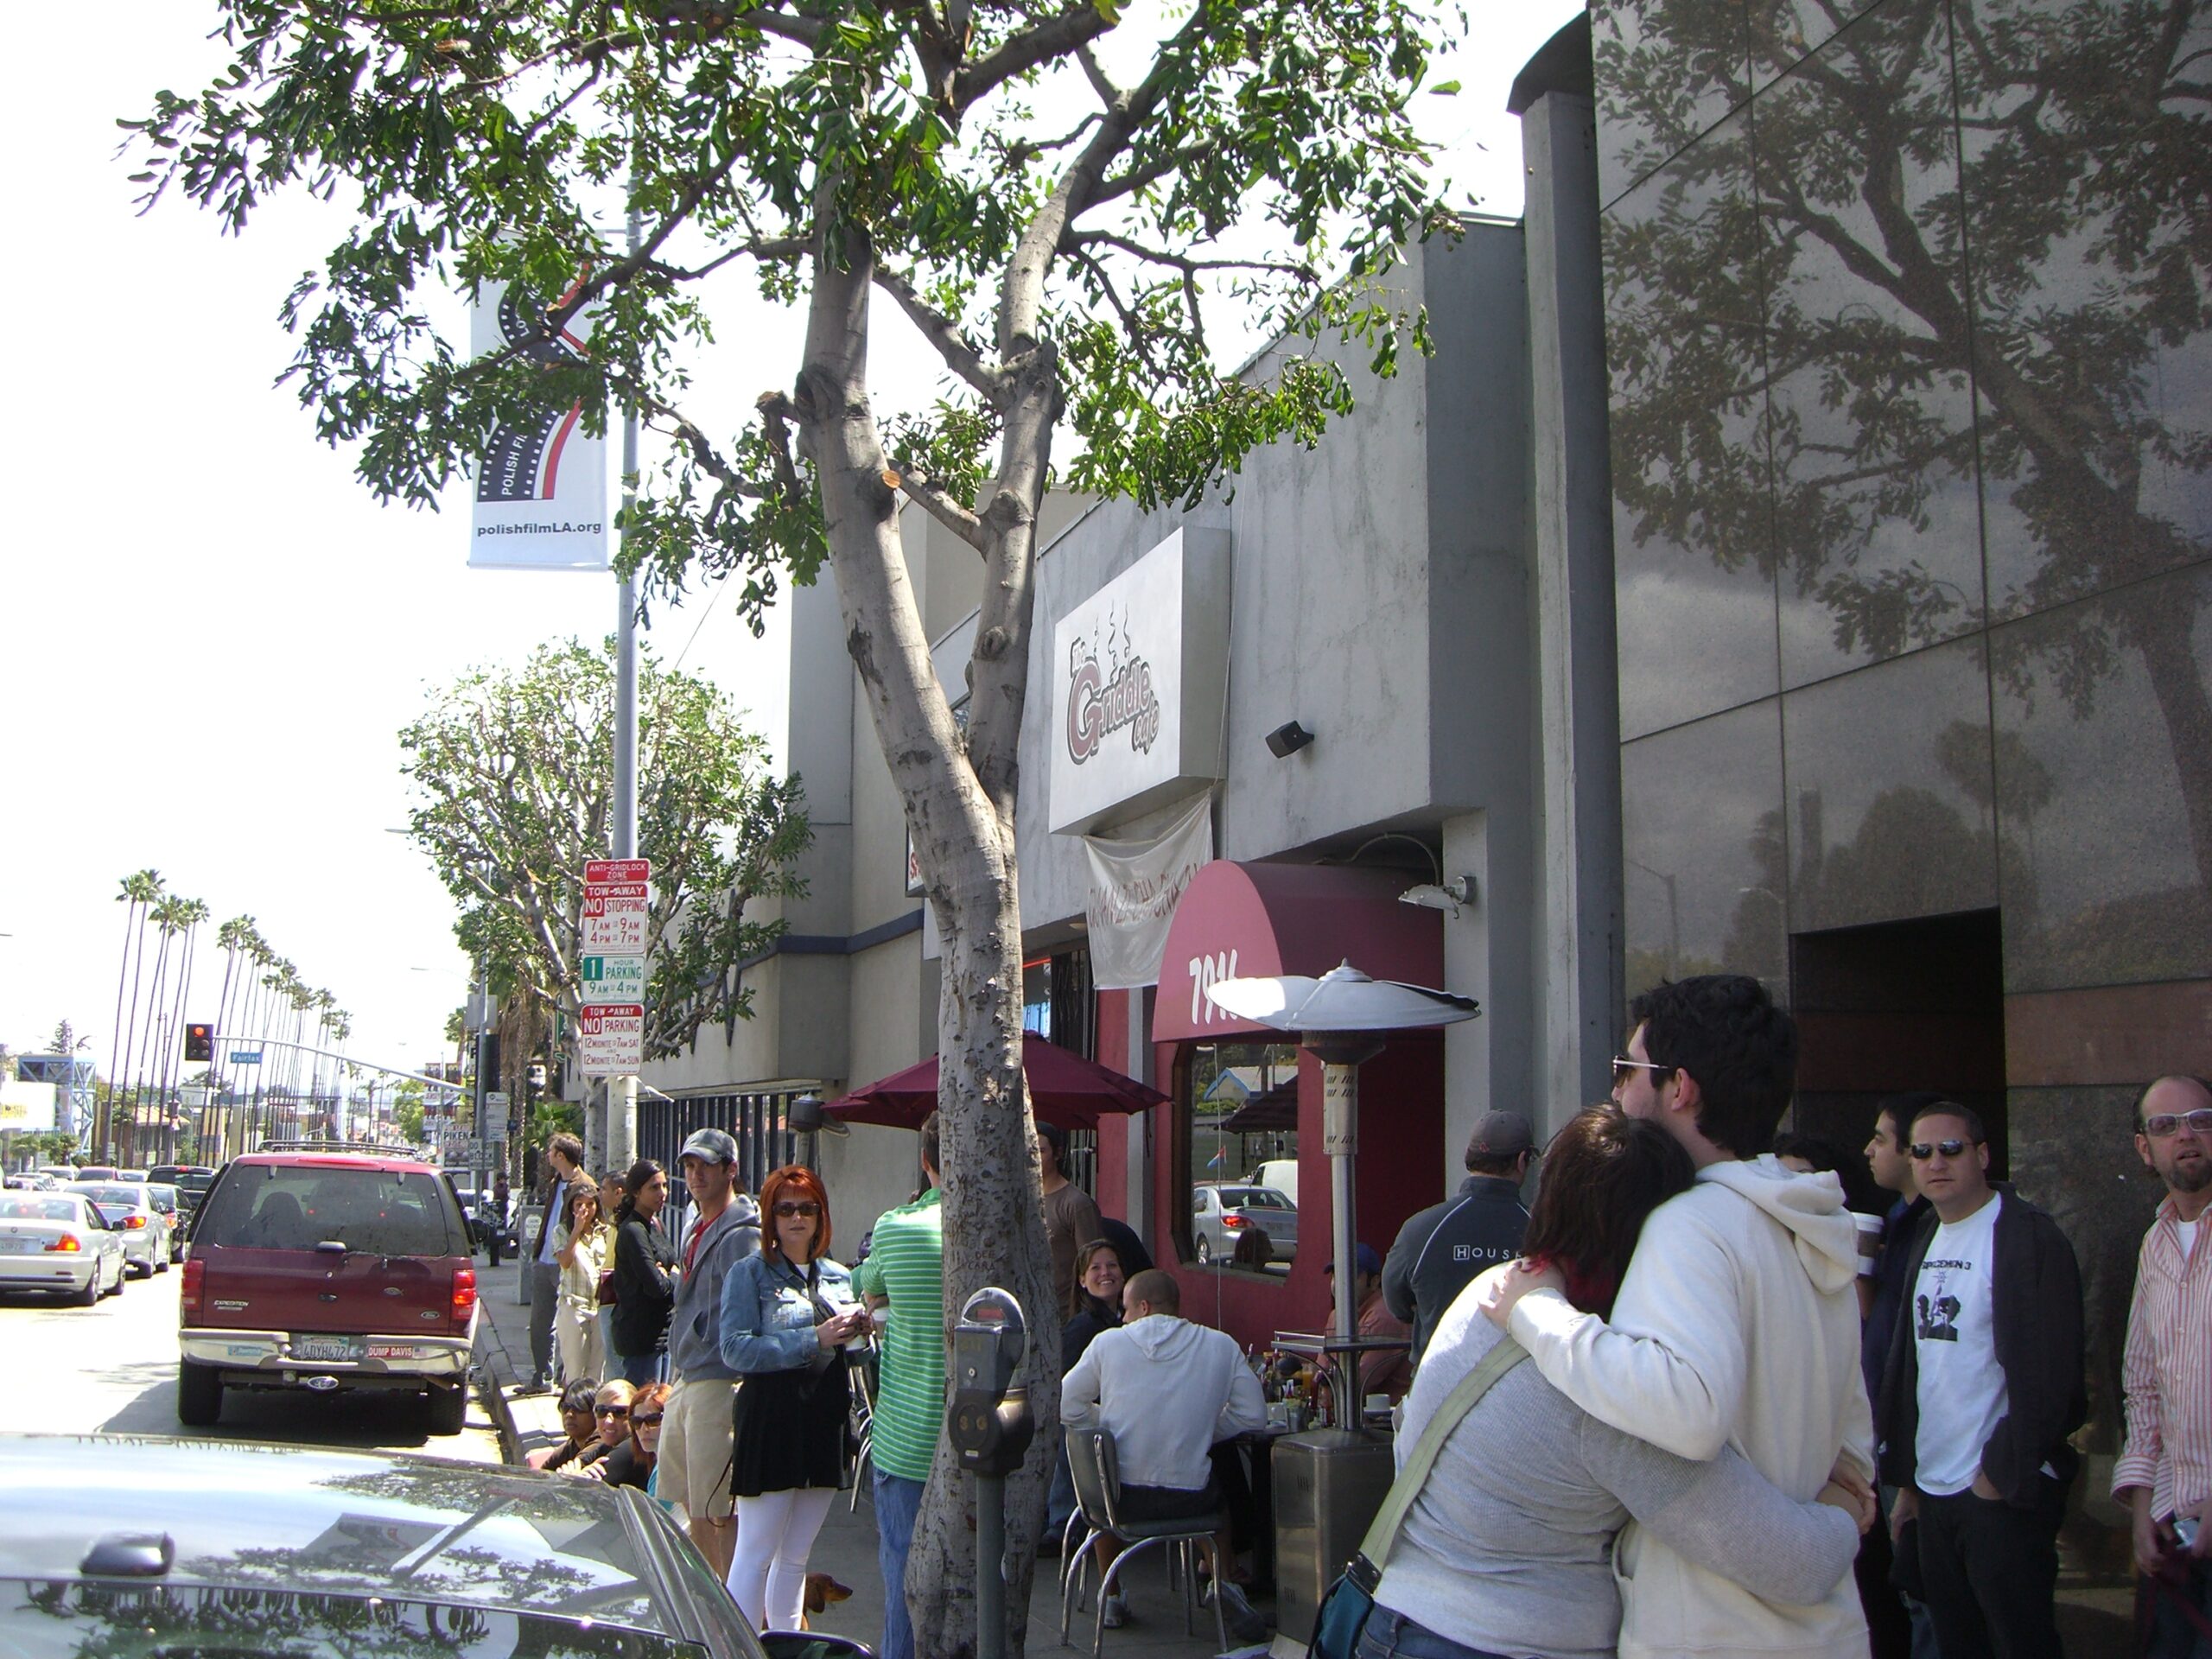 Hollywood’s Griddle Cafe